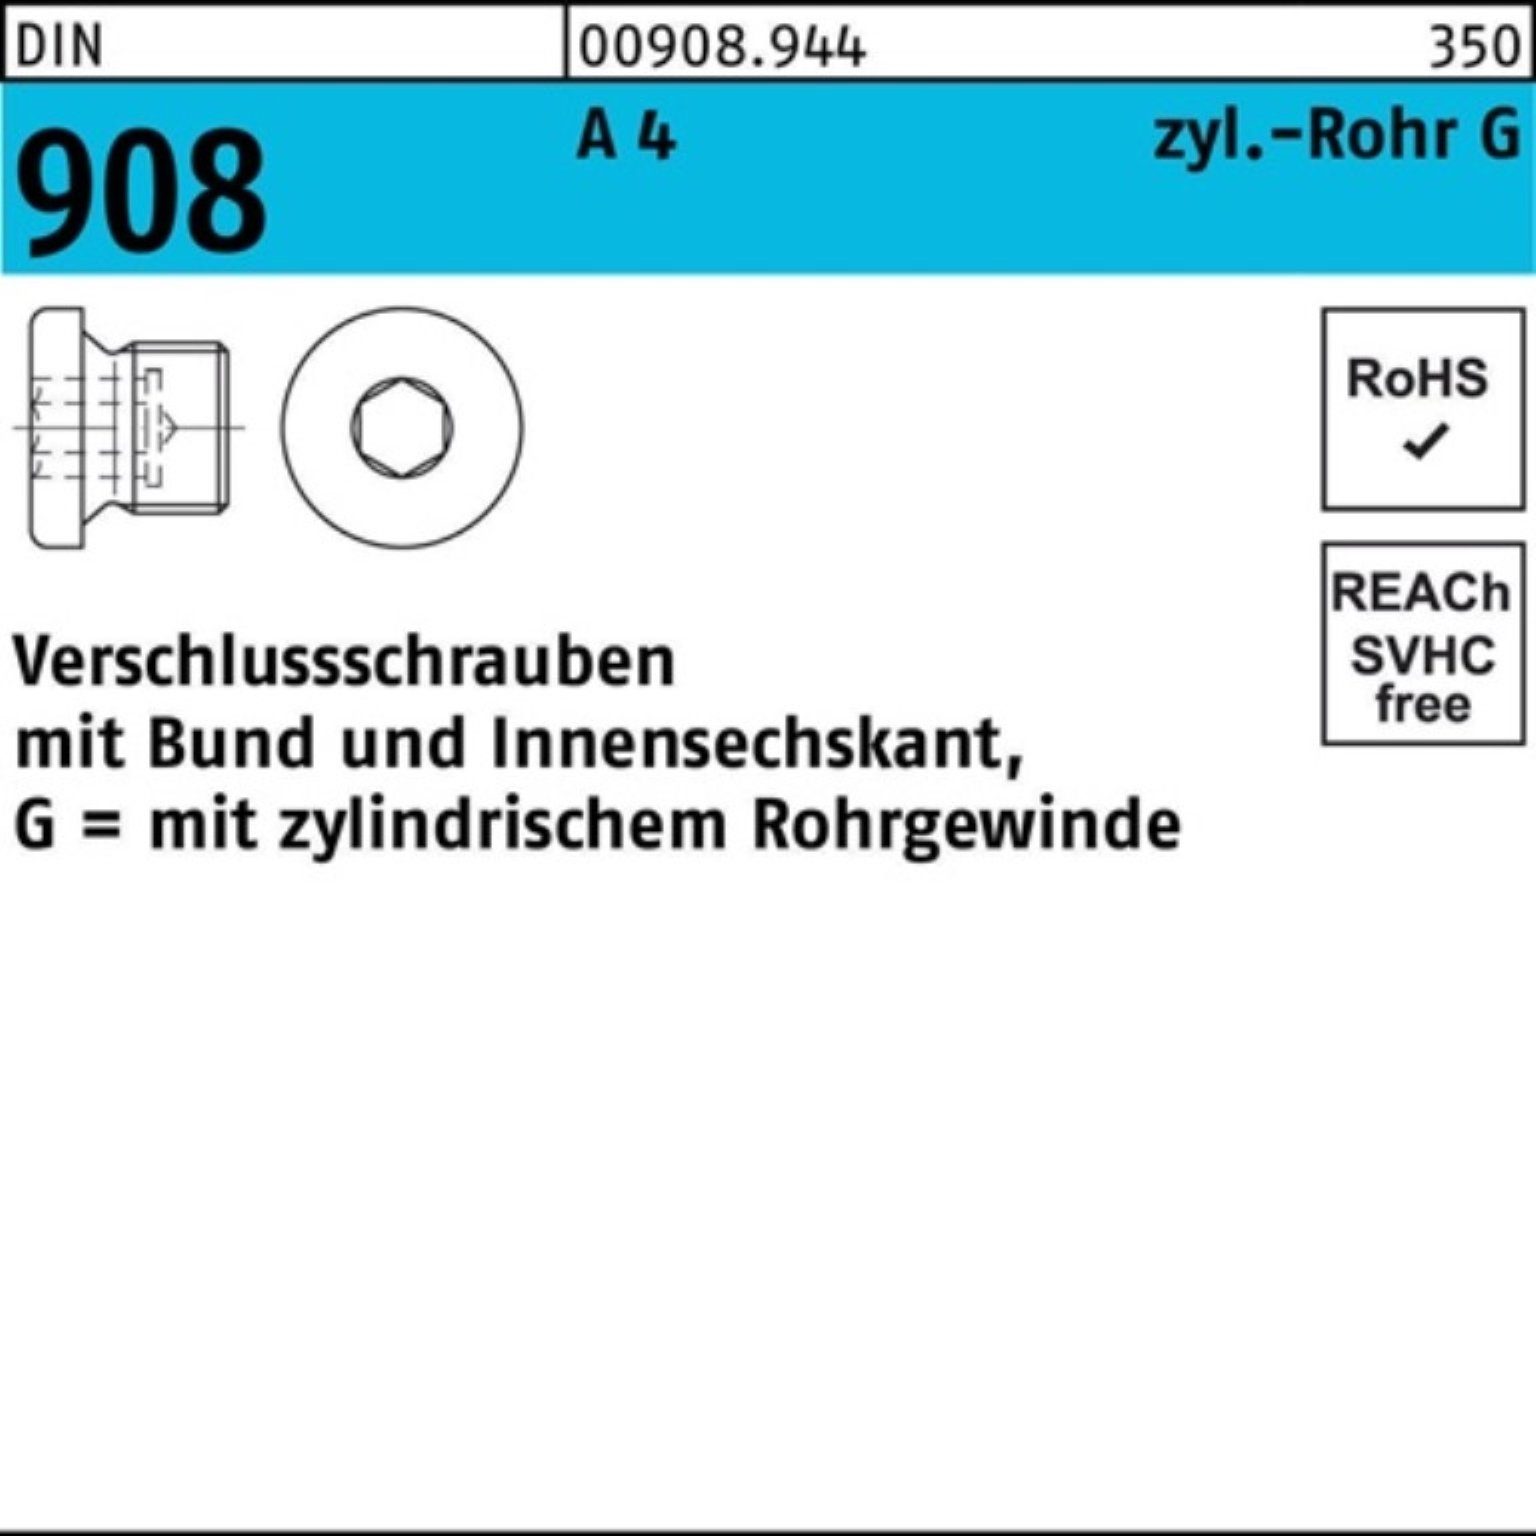 Reyher Schraube 100er Pack Verschlußschraube DIN 908 Bund/Innen-6kt G 1/2 A A 4 1 St